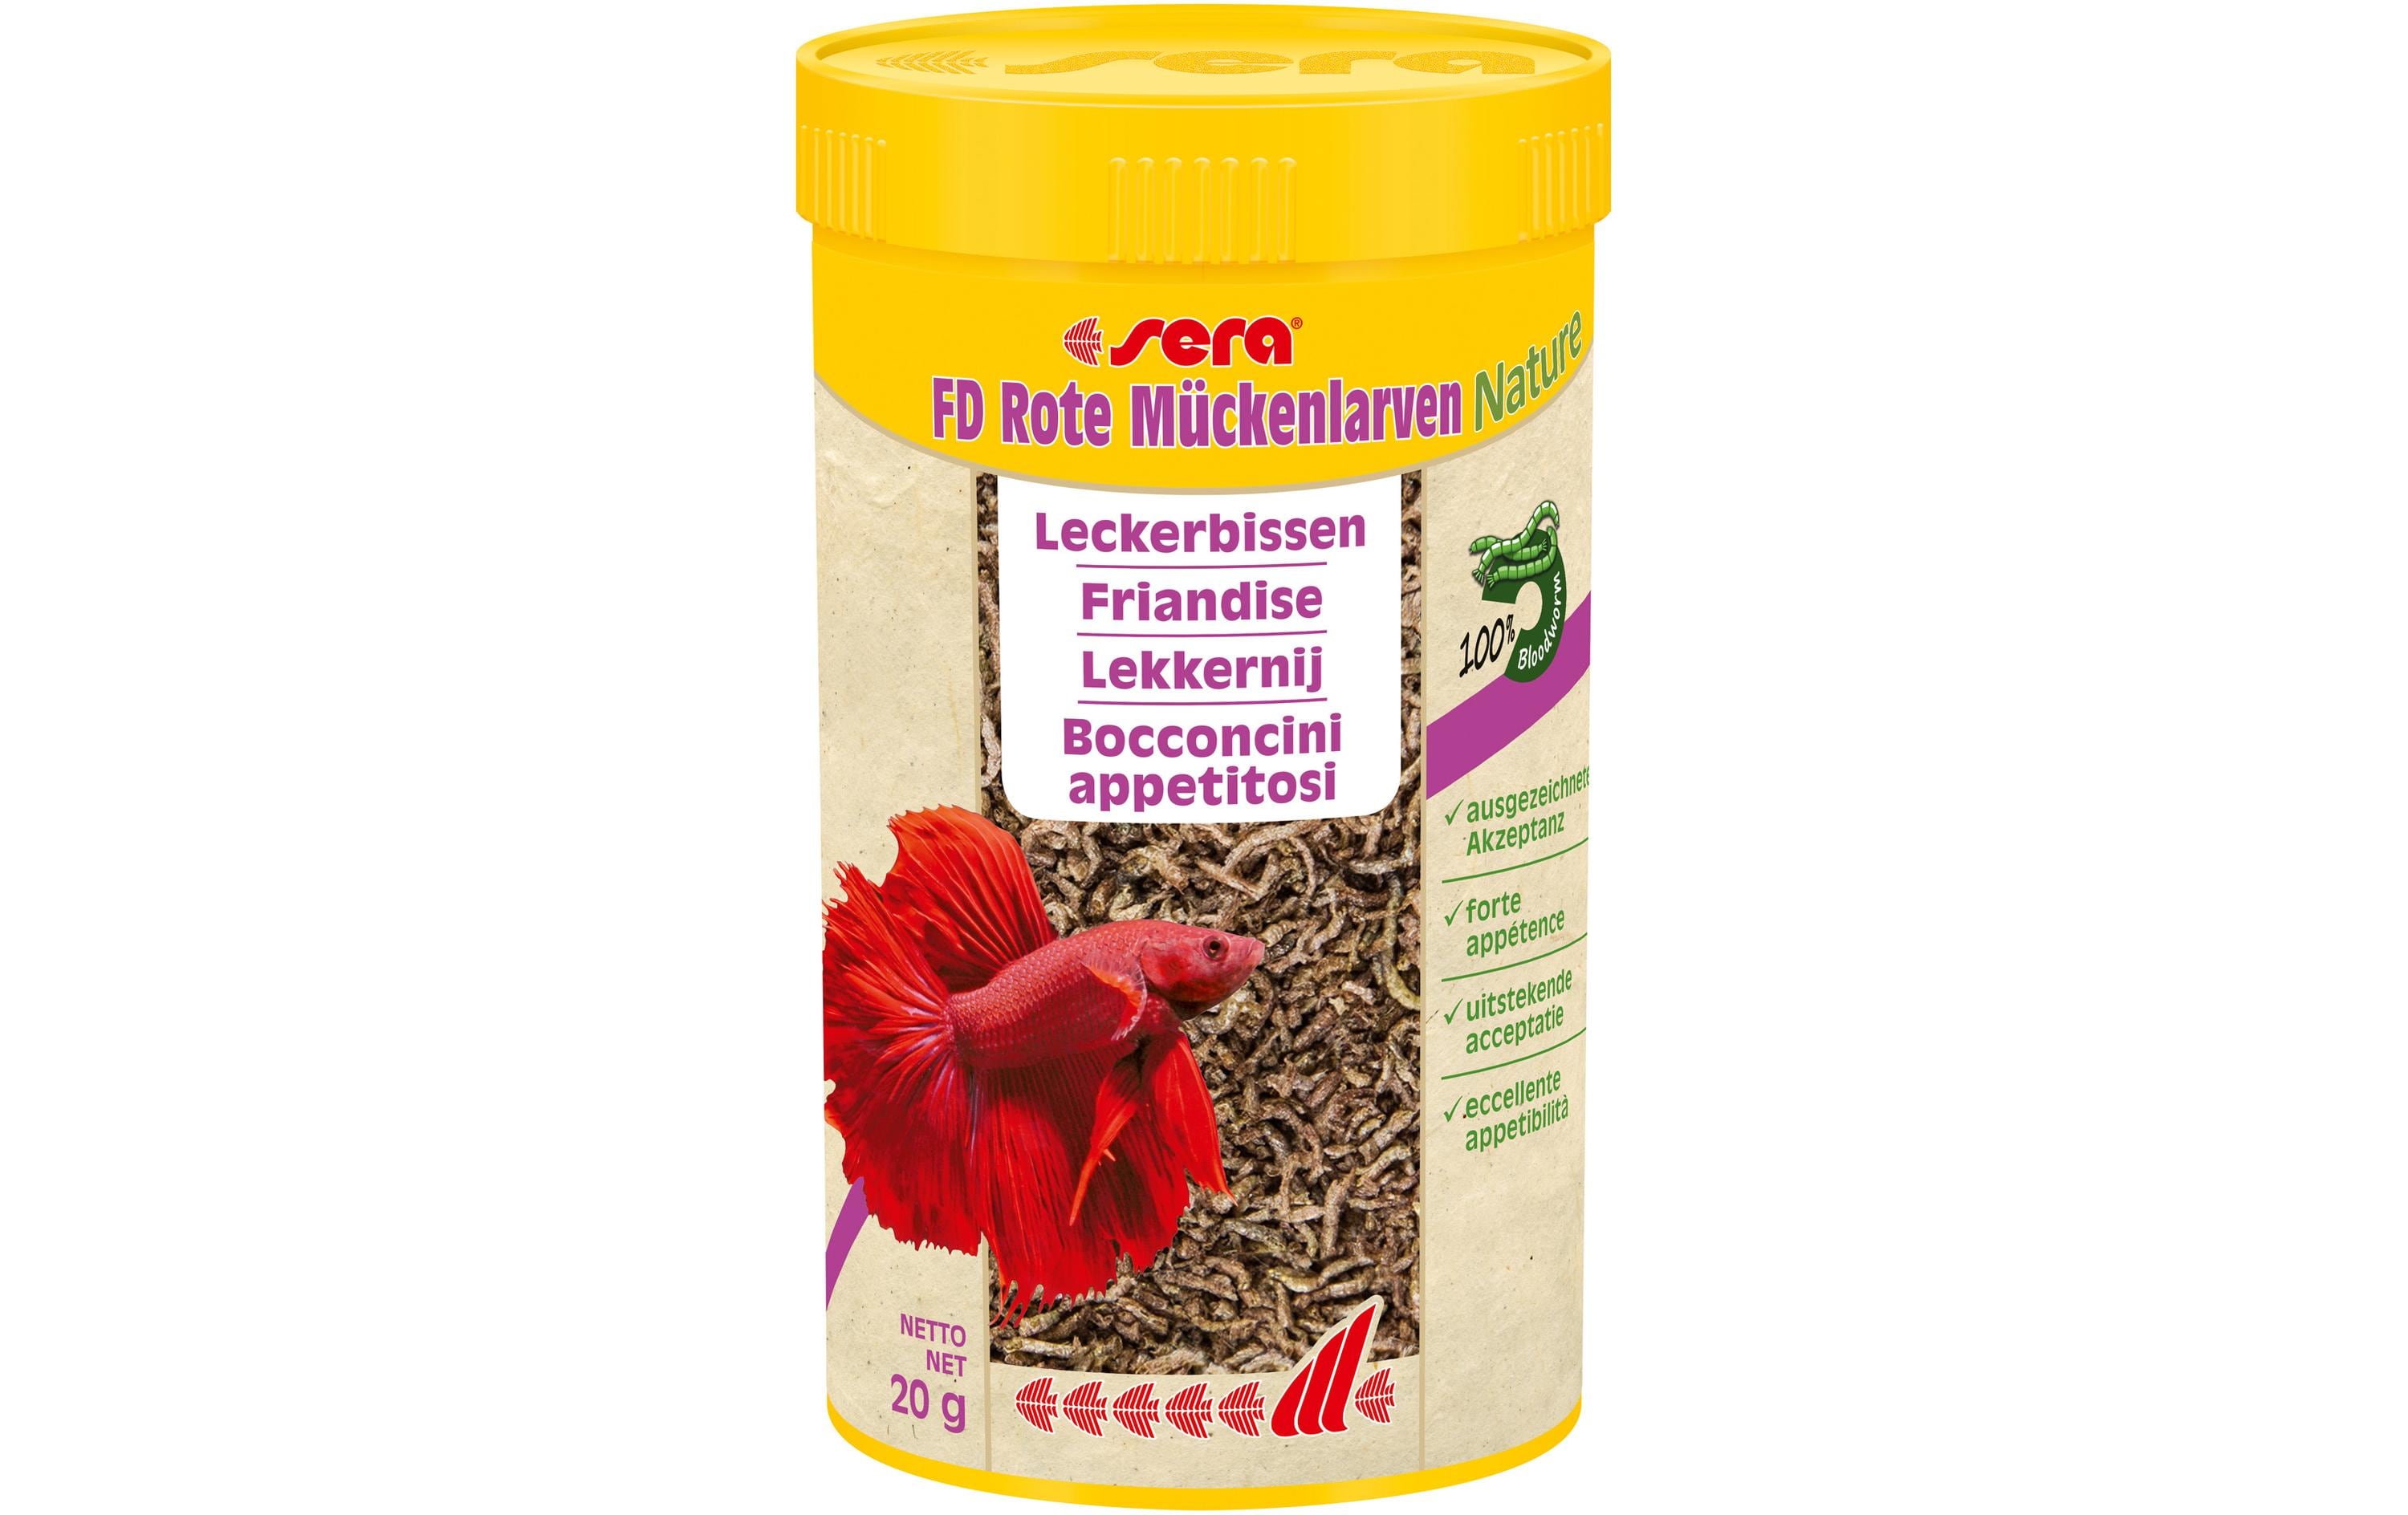 sera Leckerbissen FD Rote Mückenlarven Nature, 250 ml, 20g